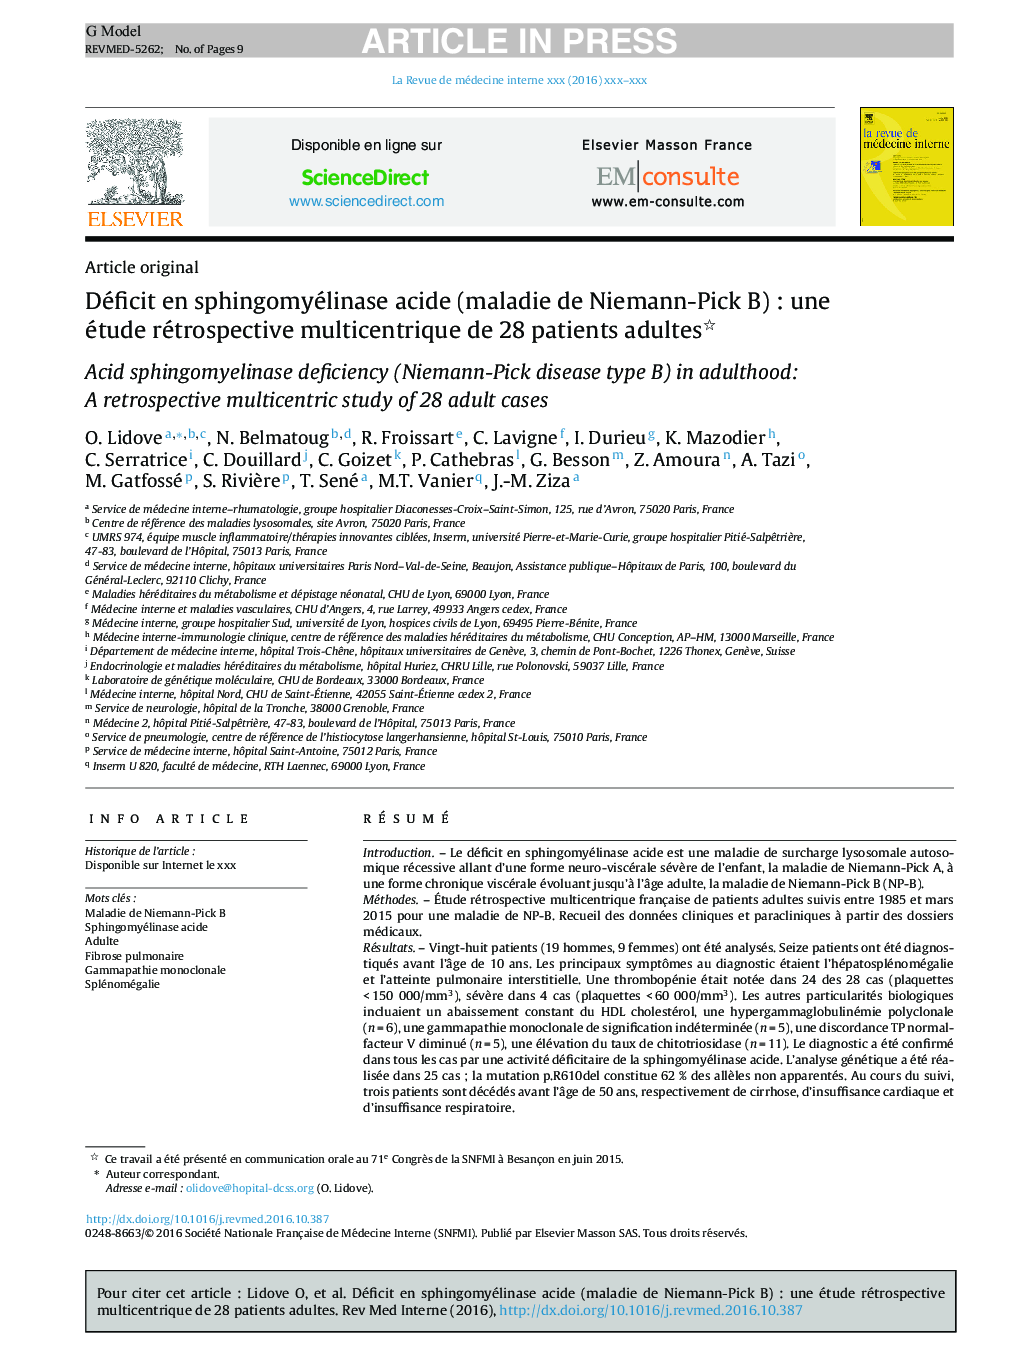 Déficit en sphingomyélinase acide (maladie de Niemann-Pick B)Â : une étude rétrospective multicentrique de 28Â patients adultes